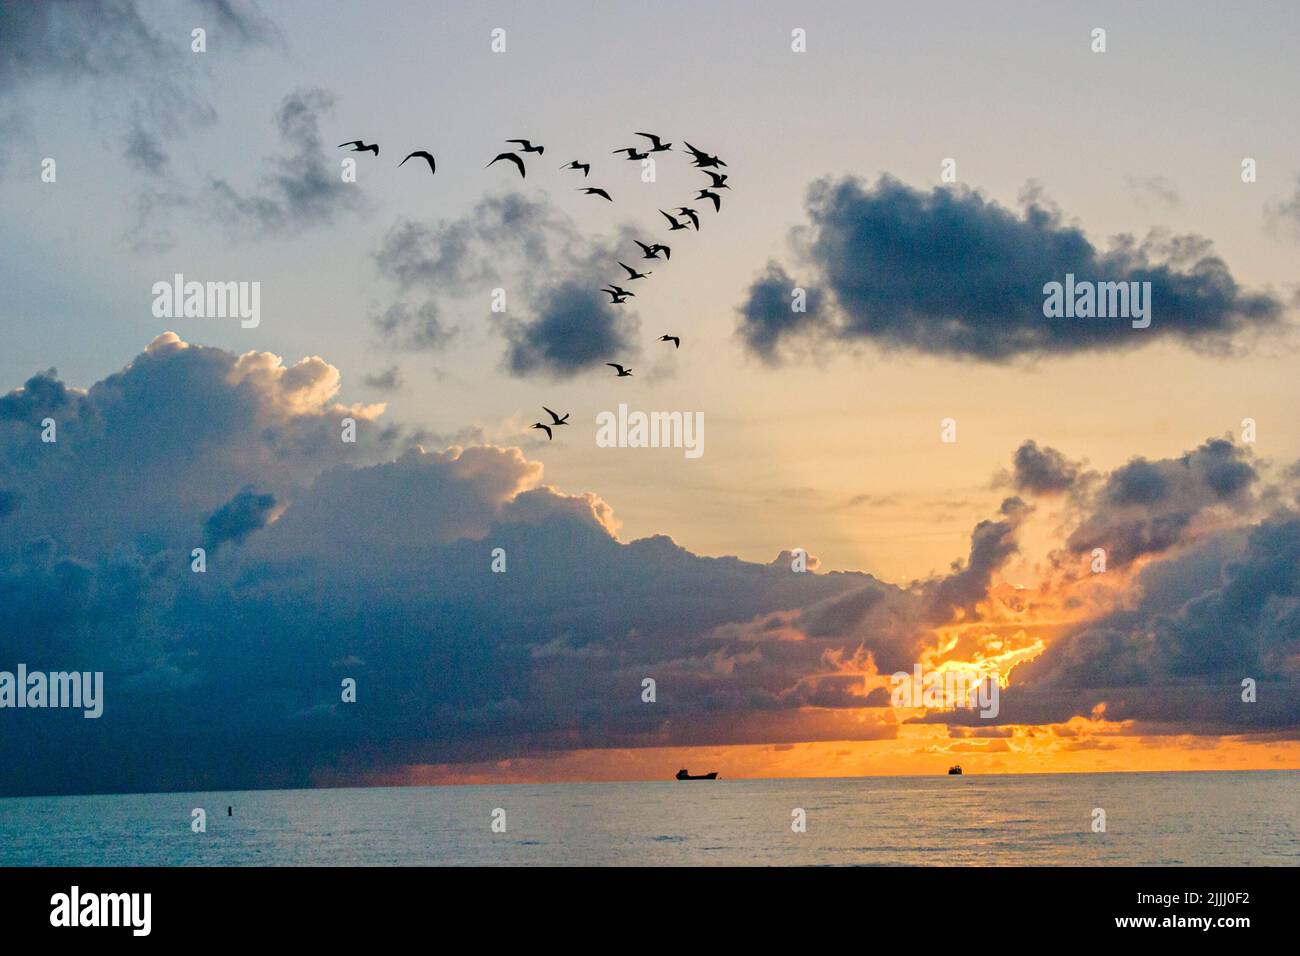 Miami Beach Florida, océan Atlantique littoral littoral littoral bord de mer, formation d'oiseaux lever de soleil nuages ciel météo scène dans une photo Banque D'Images